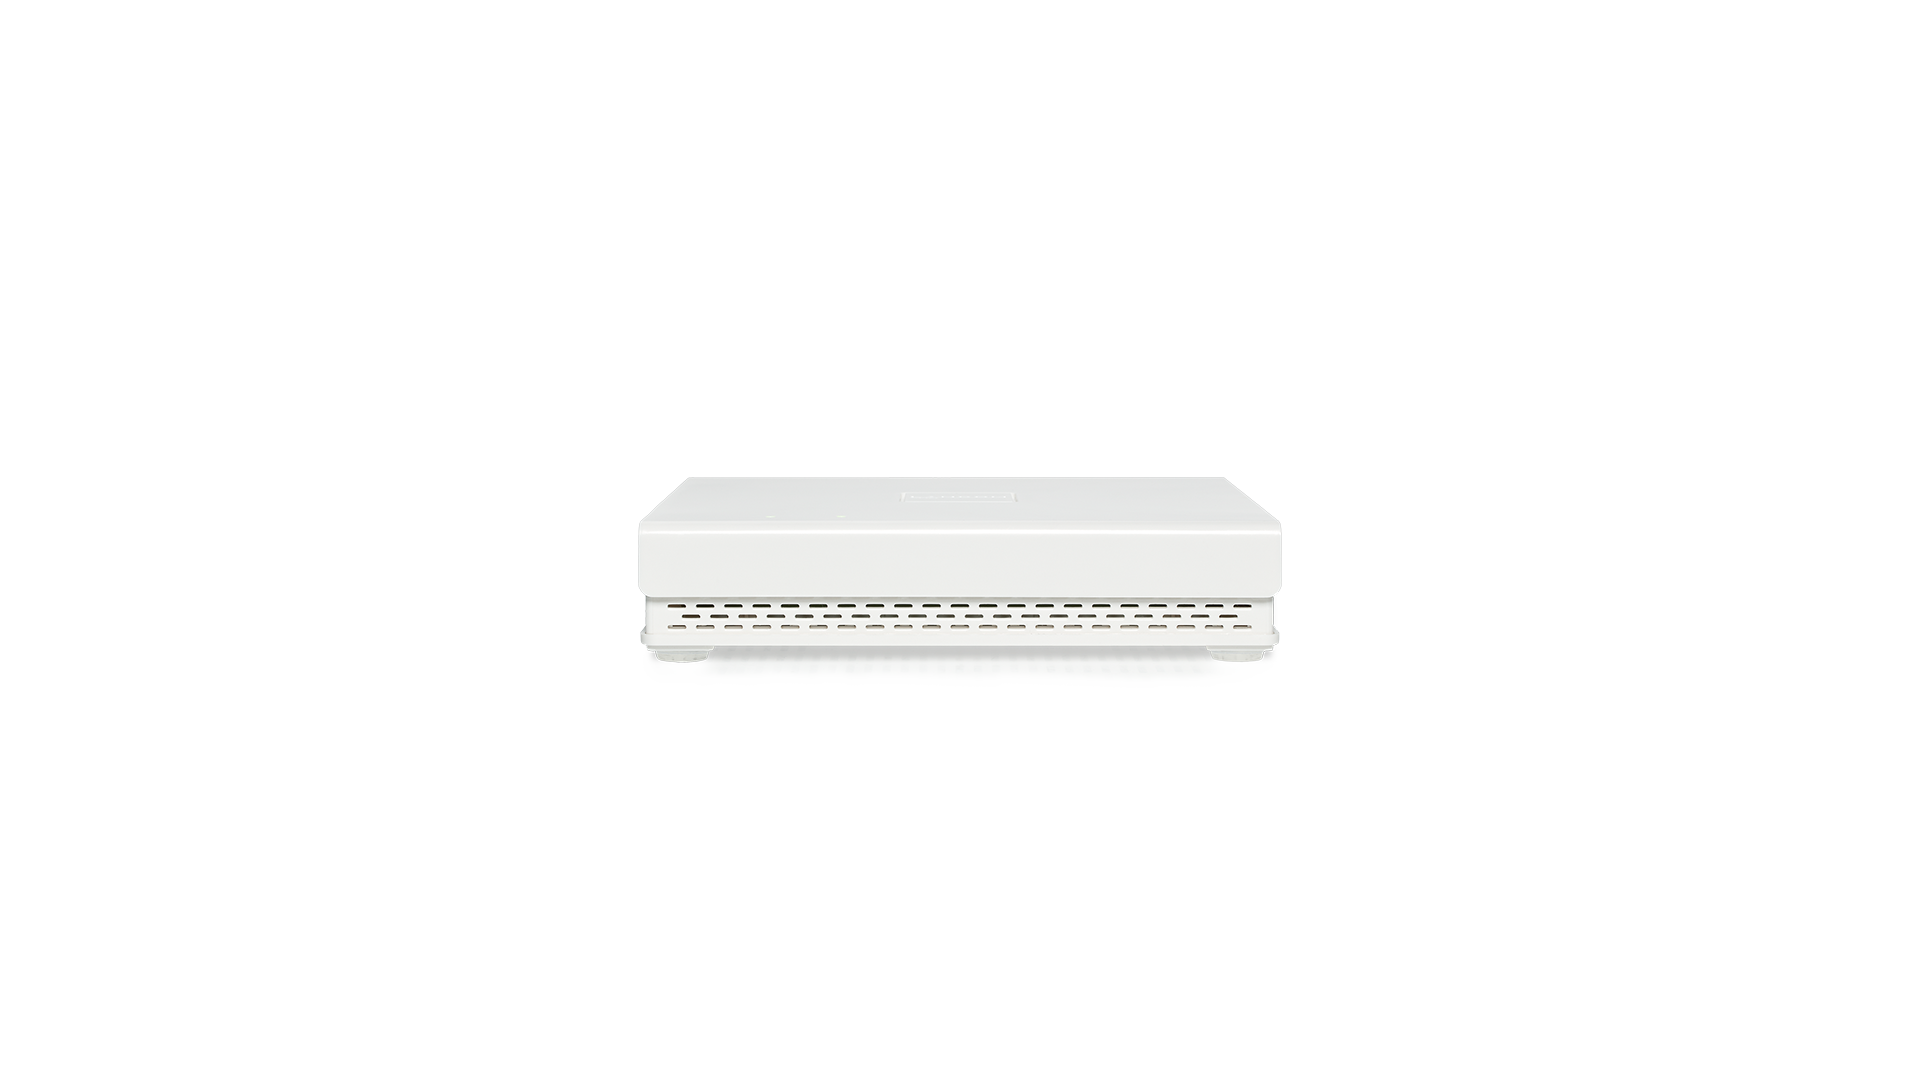 Weißer, quadratischer Access Point LANCOM LX-6500E in Frontansicht